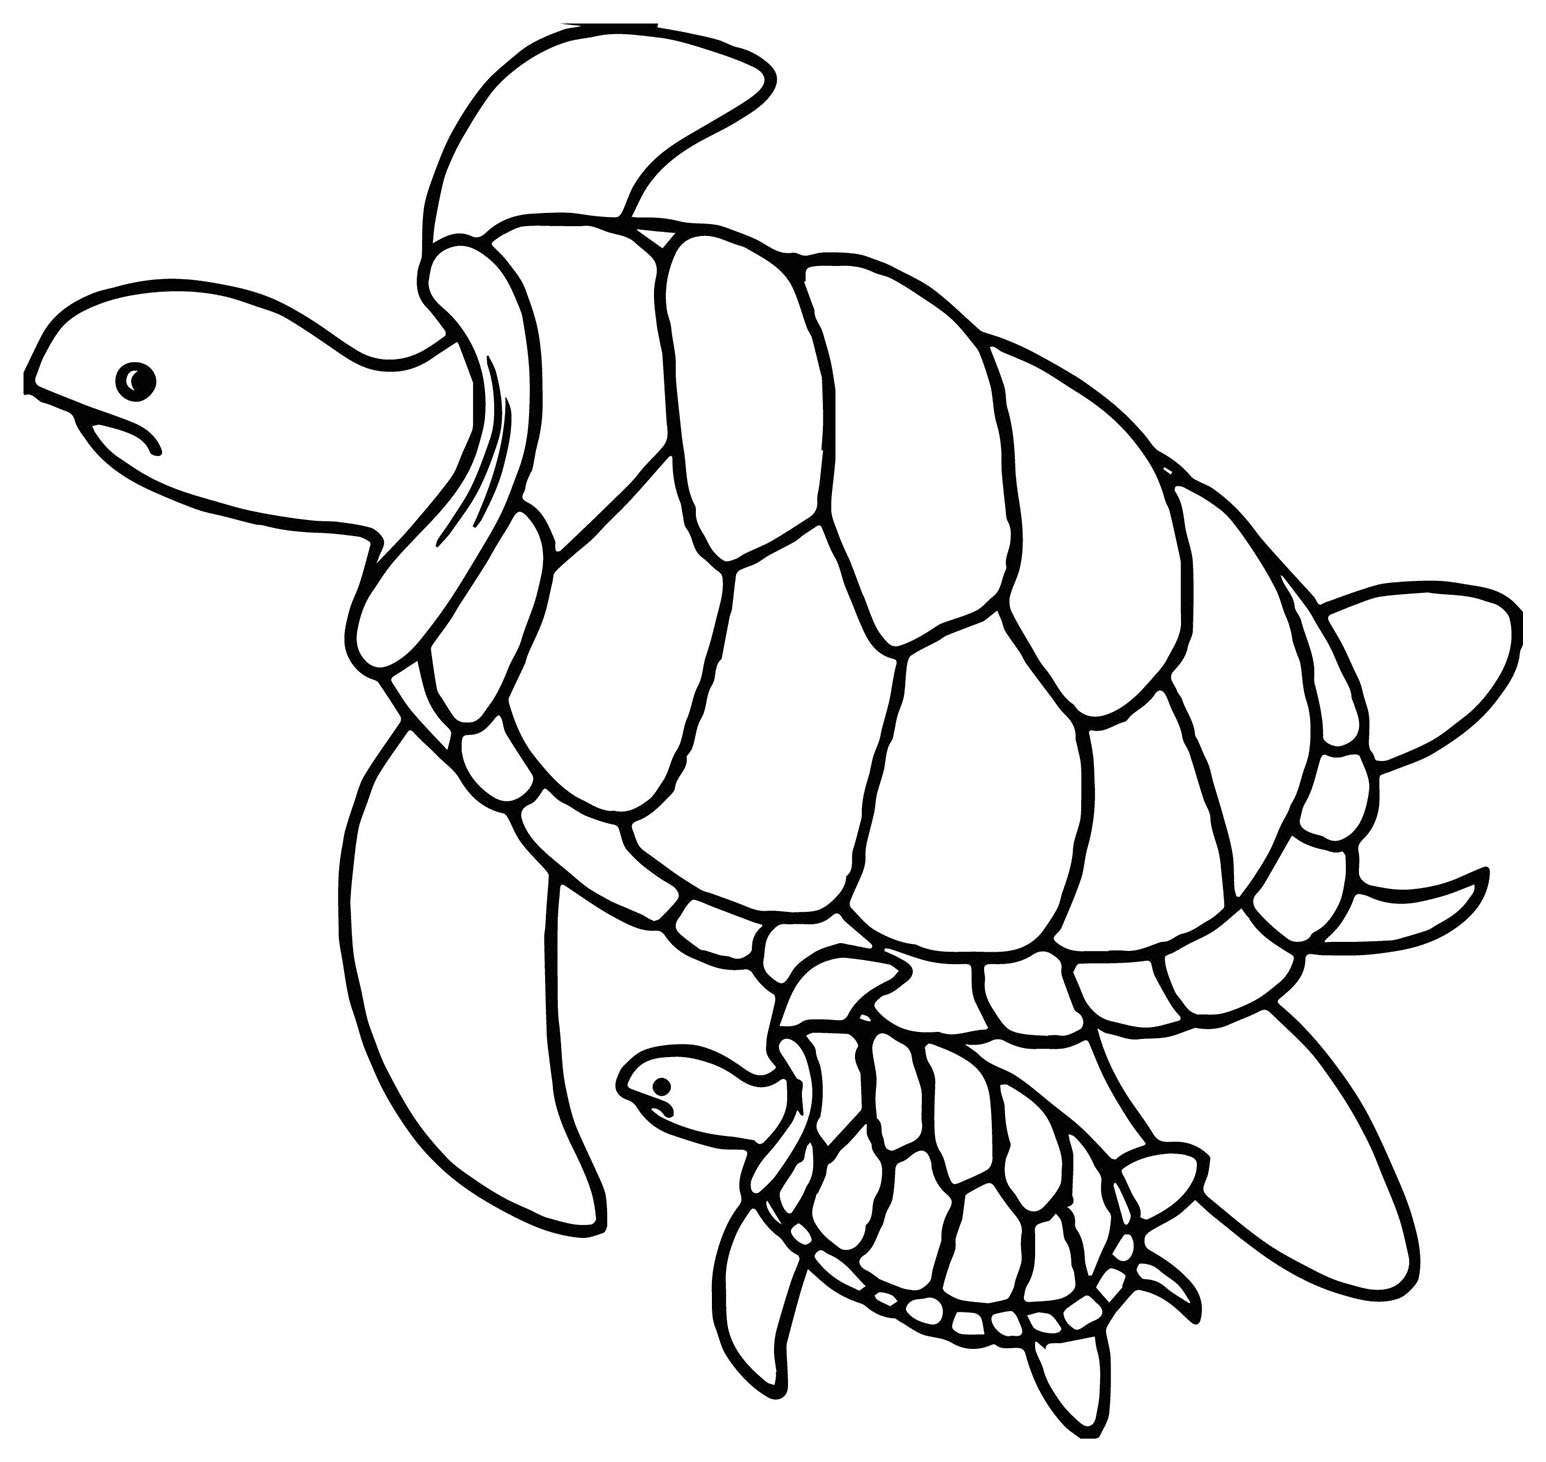 Dibujo de tortuga para imprimir y colorear